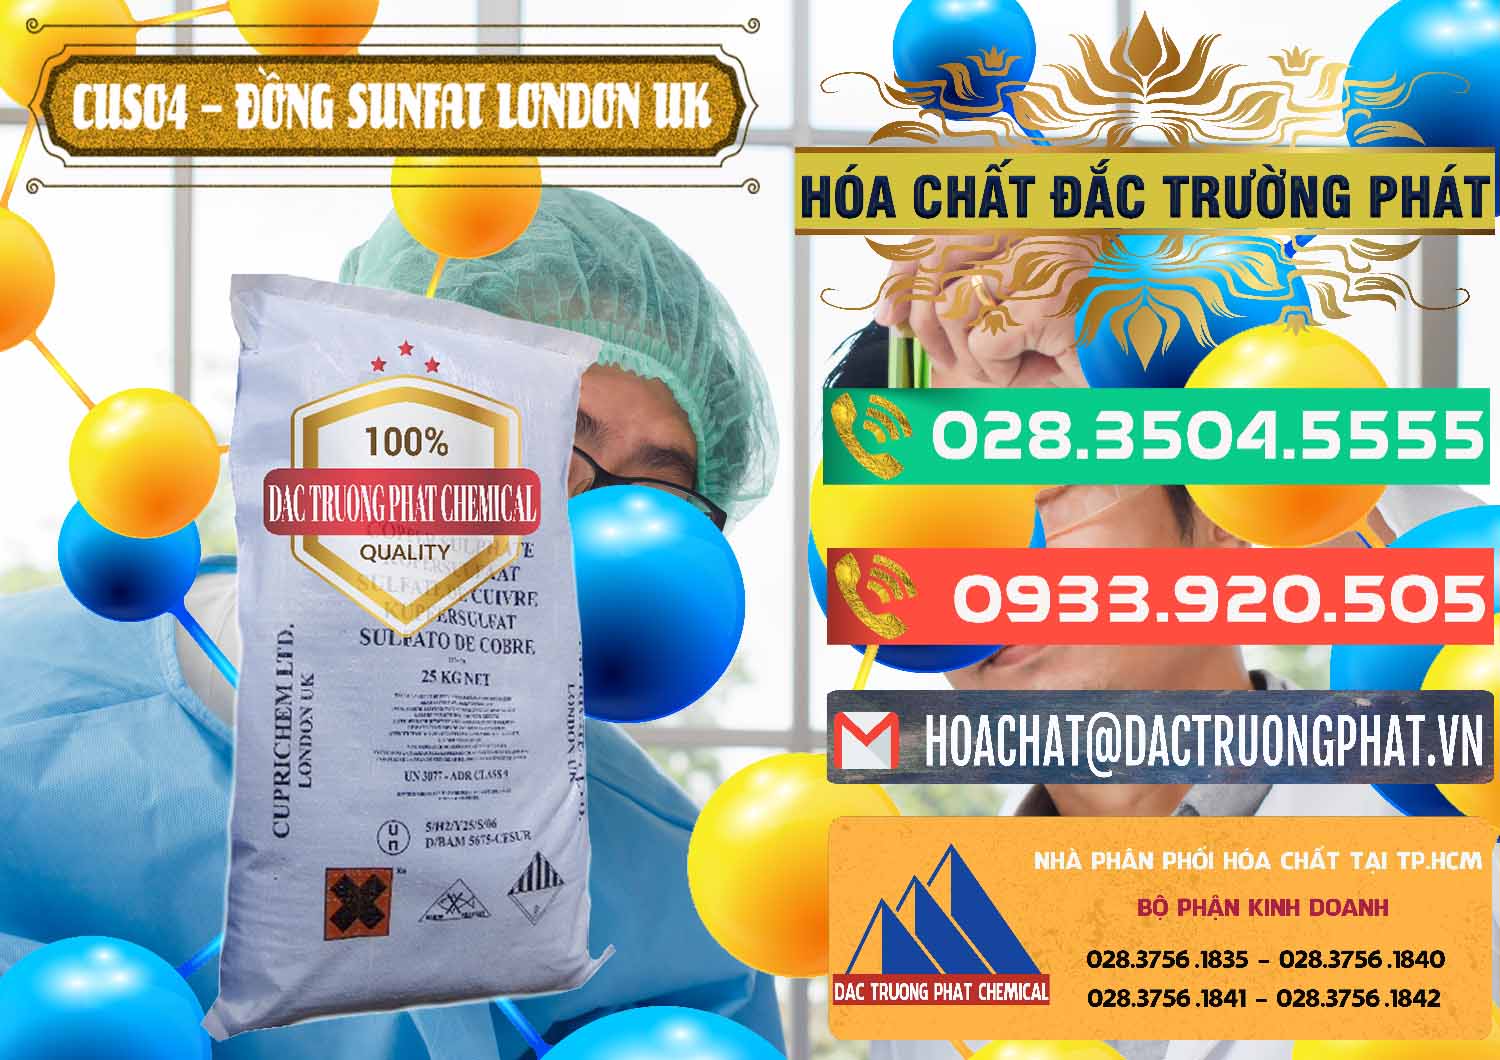 Nơi chuyên cung ứng và bán CuSO4 – Đồng Sunfat Anh Uk Kingdoms - 0478 - Công ty chuyên bán - cung cấp hóa chất tại TP.HCM - congtyhoachat.com.vn